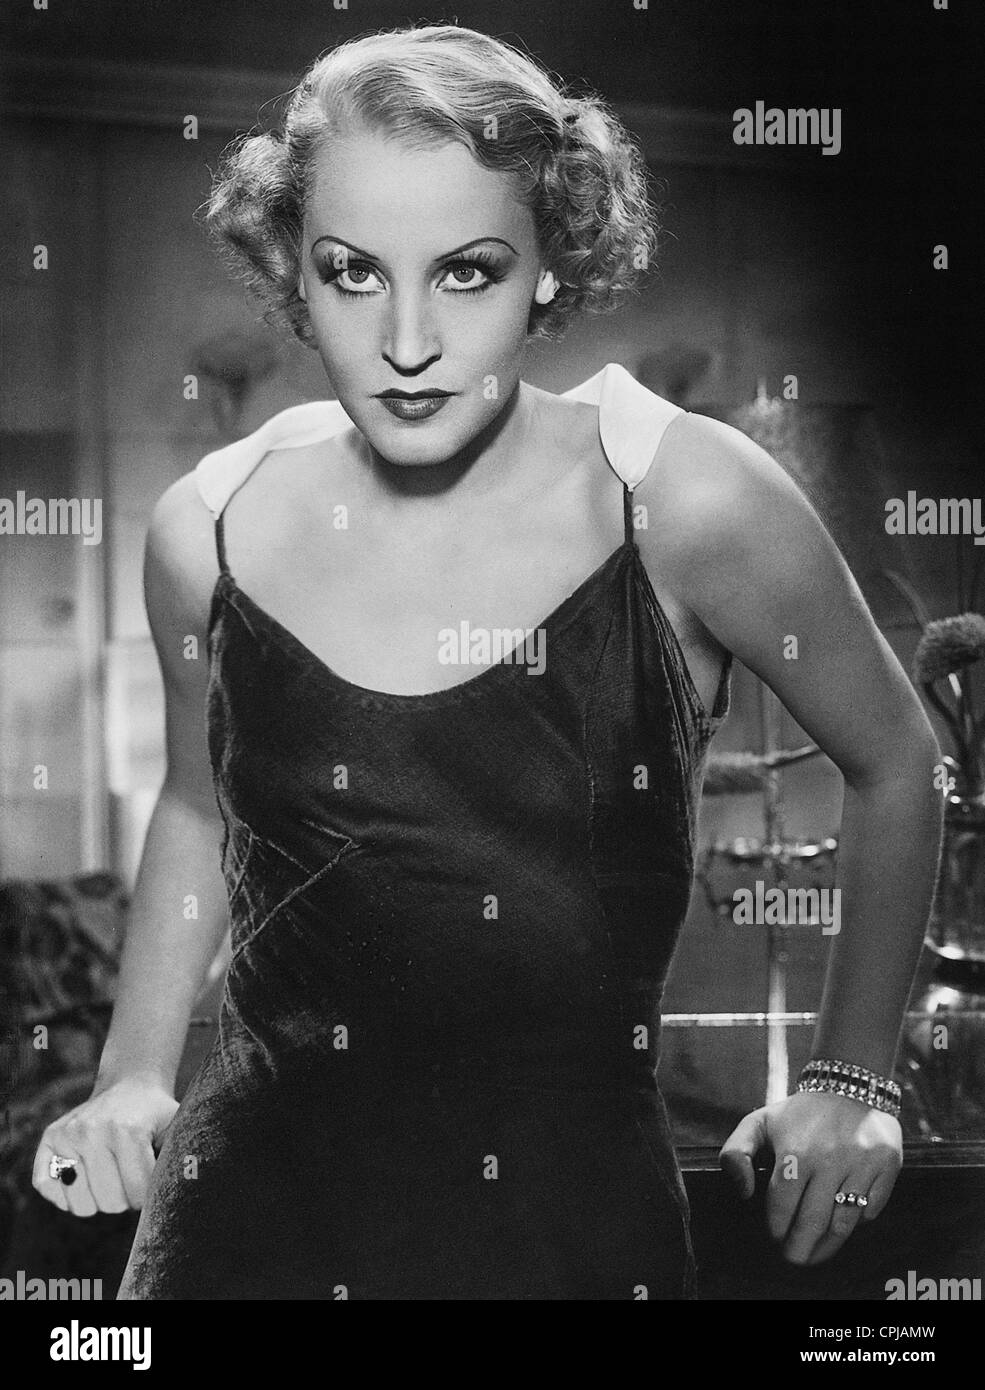 Brigitte Helm in 'Fuerst Woronzeff', 1934 Stock Photo - Alamy